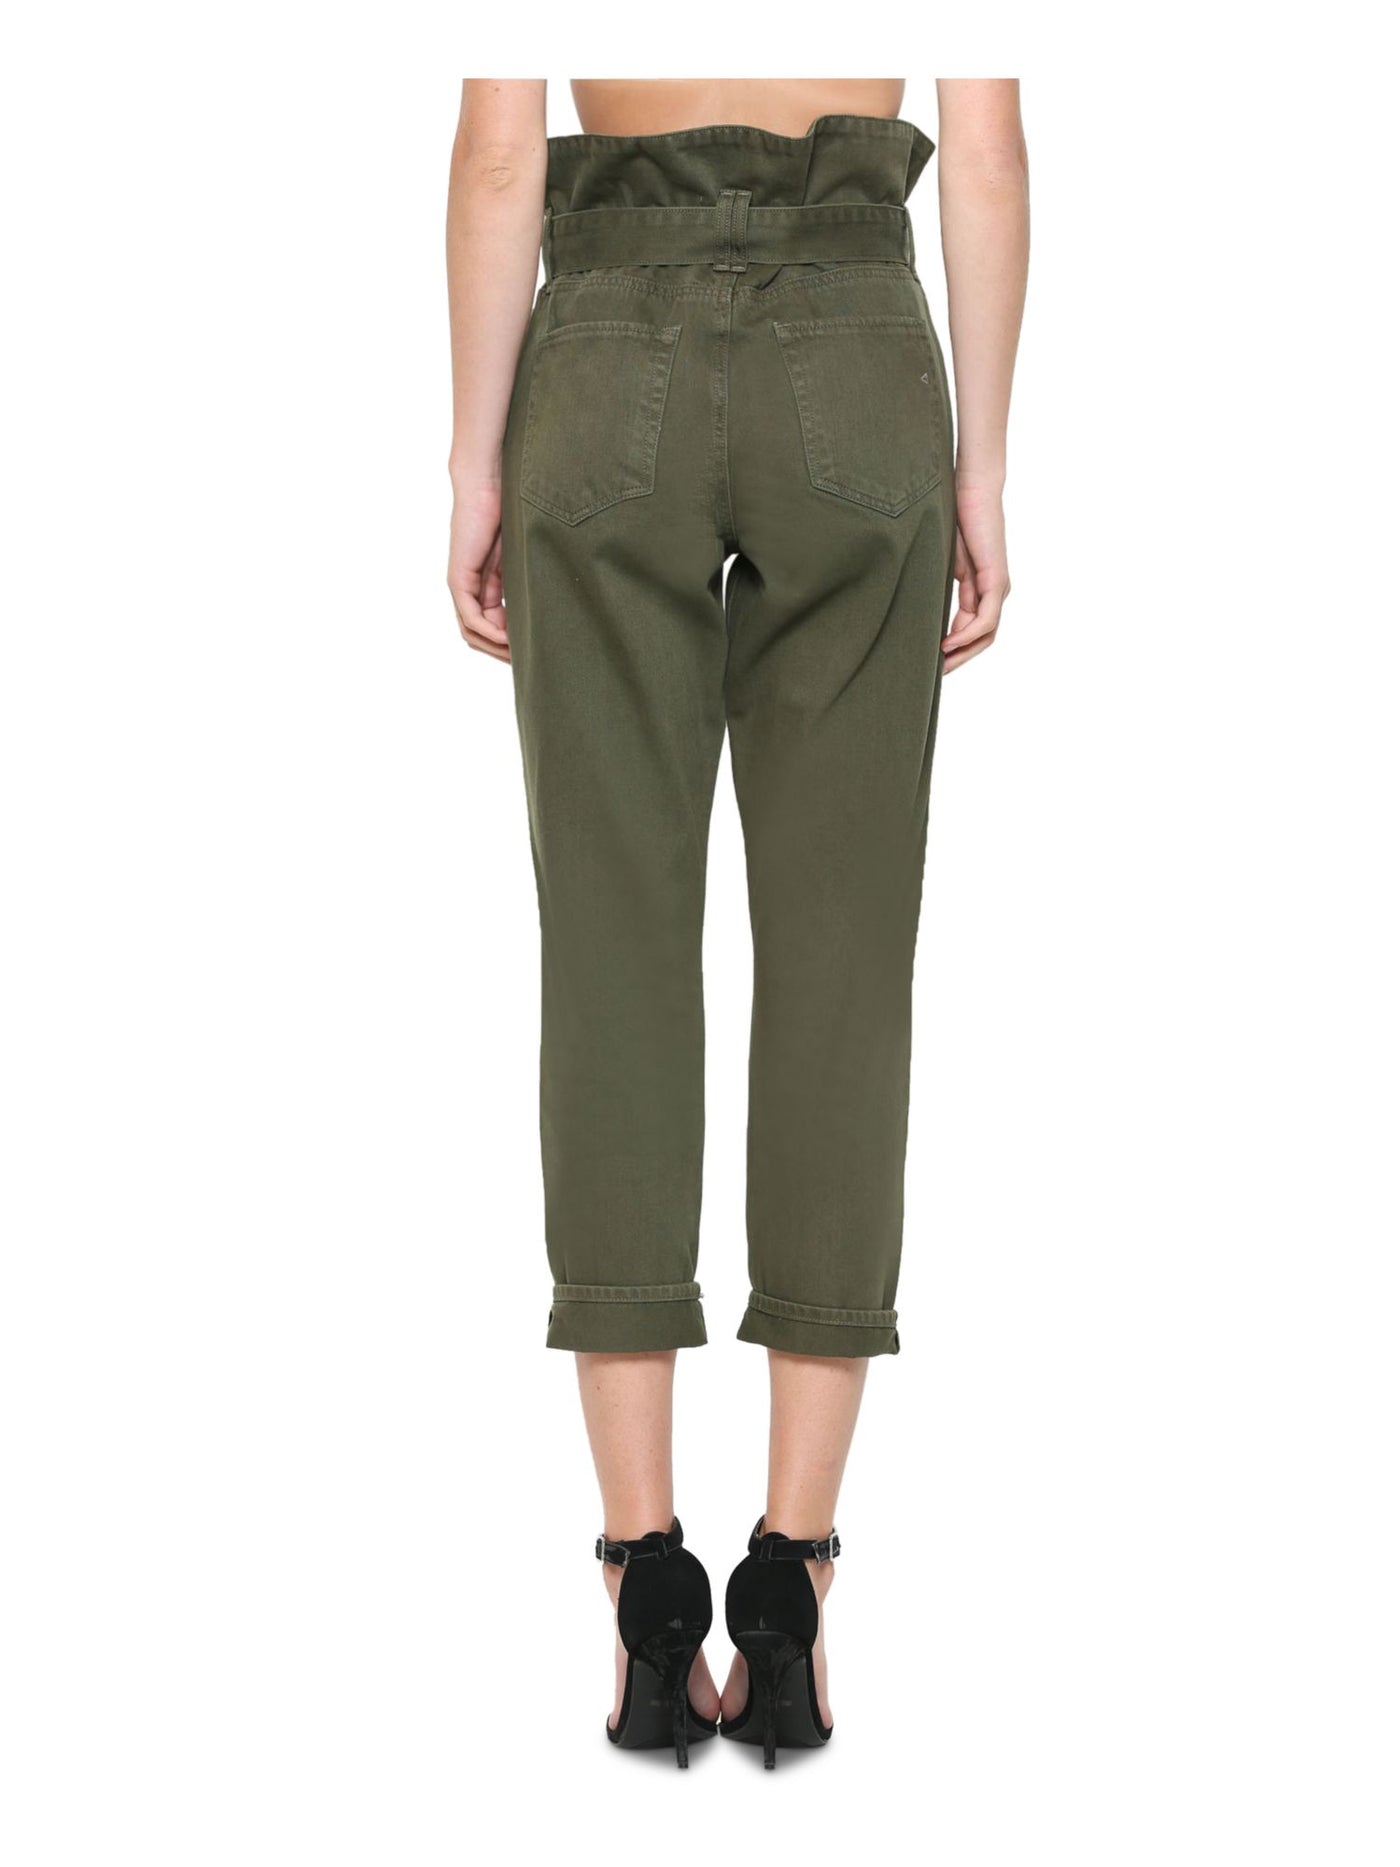 Hidden Womens Green Belted Pants Size: 24 Waist